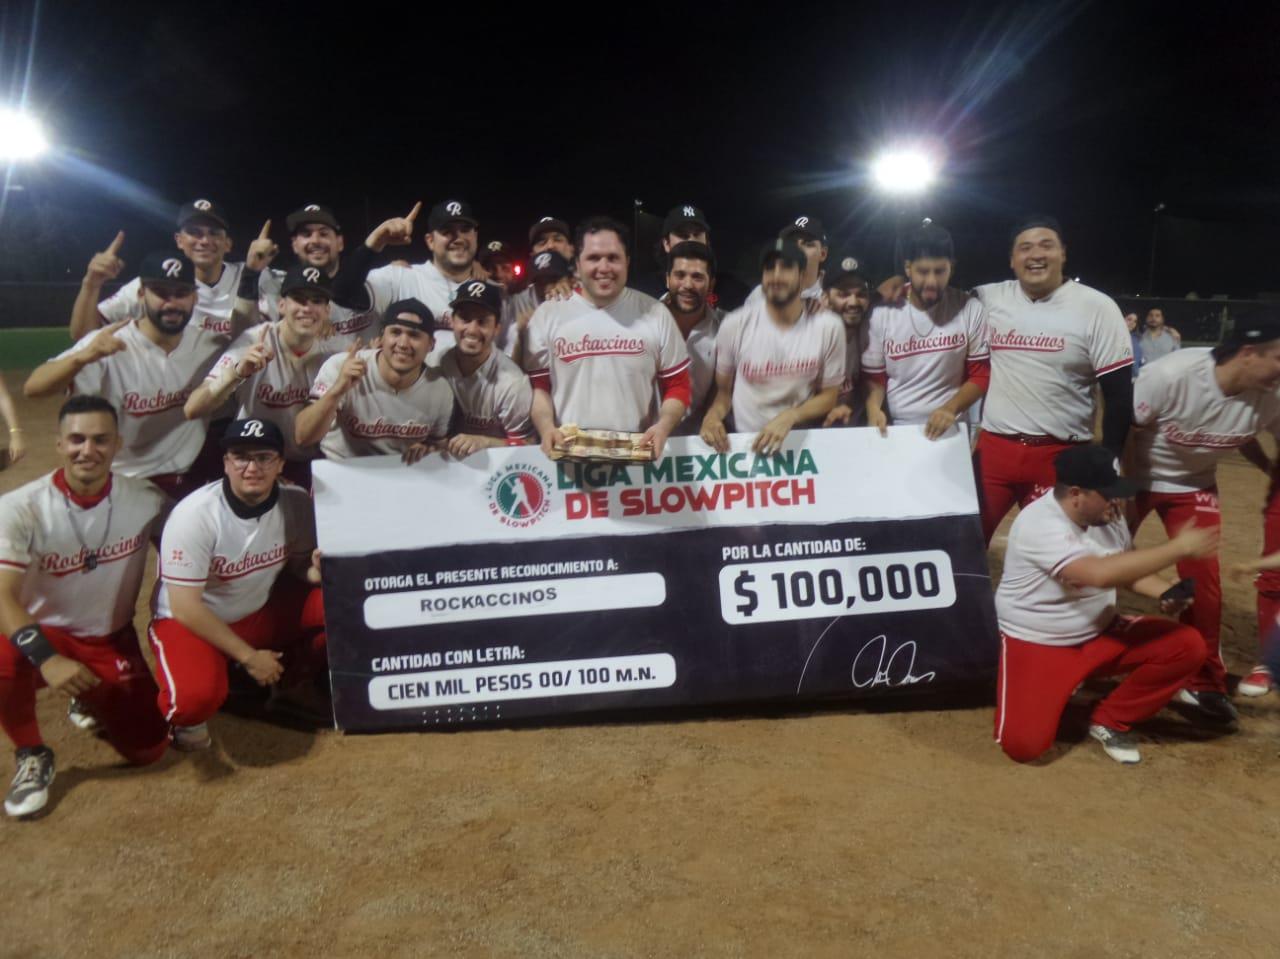 ¡Campeones! Rockaccinos se llevan la Liga Mexicana de Slowpitch